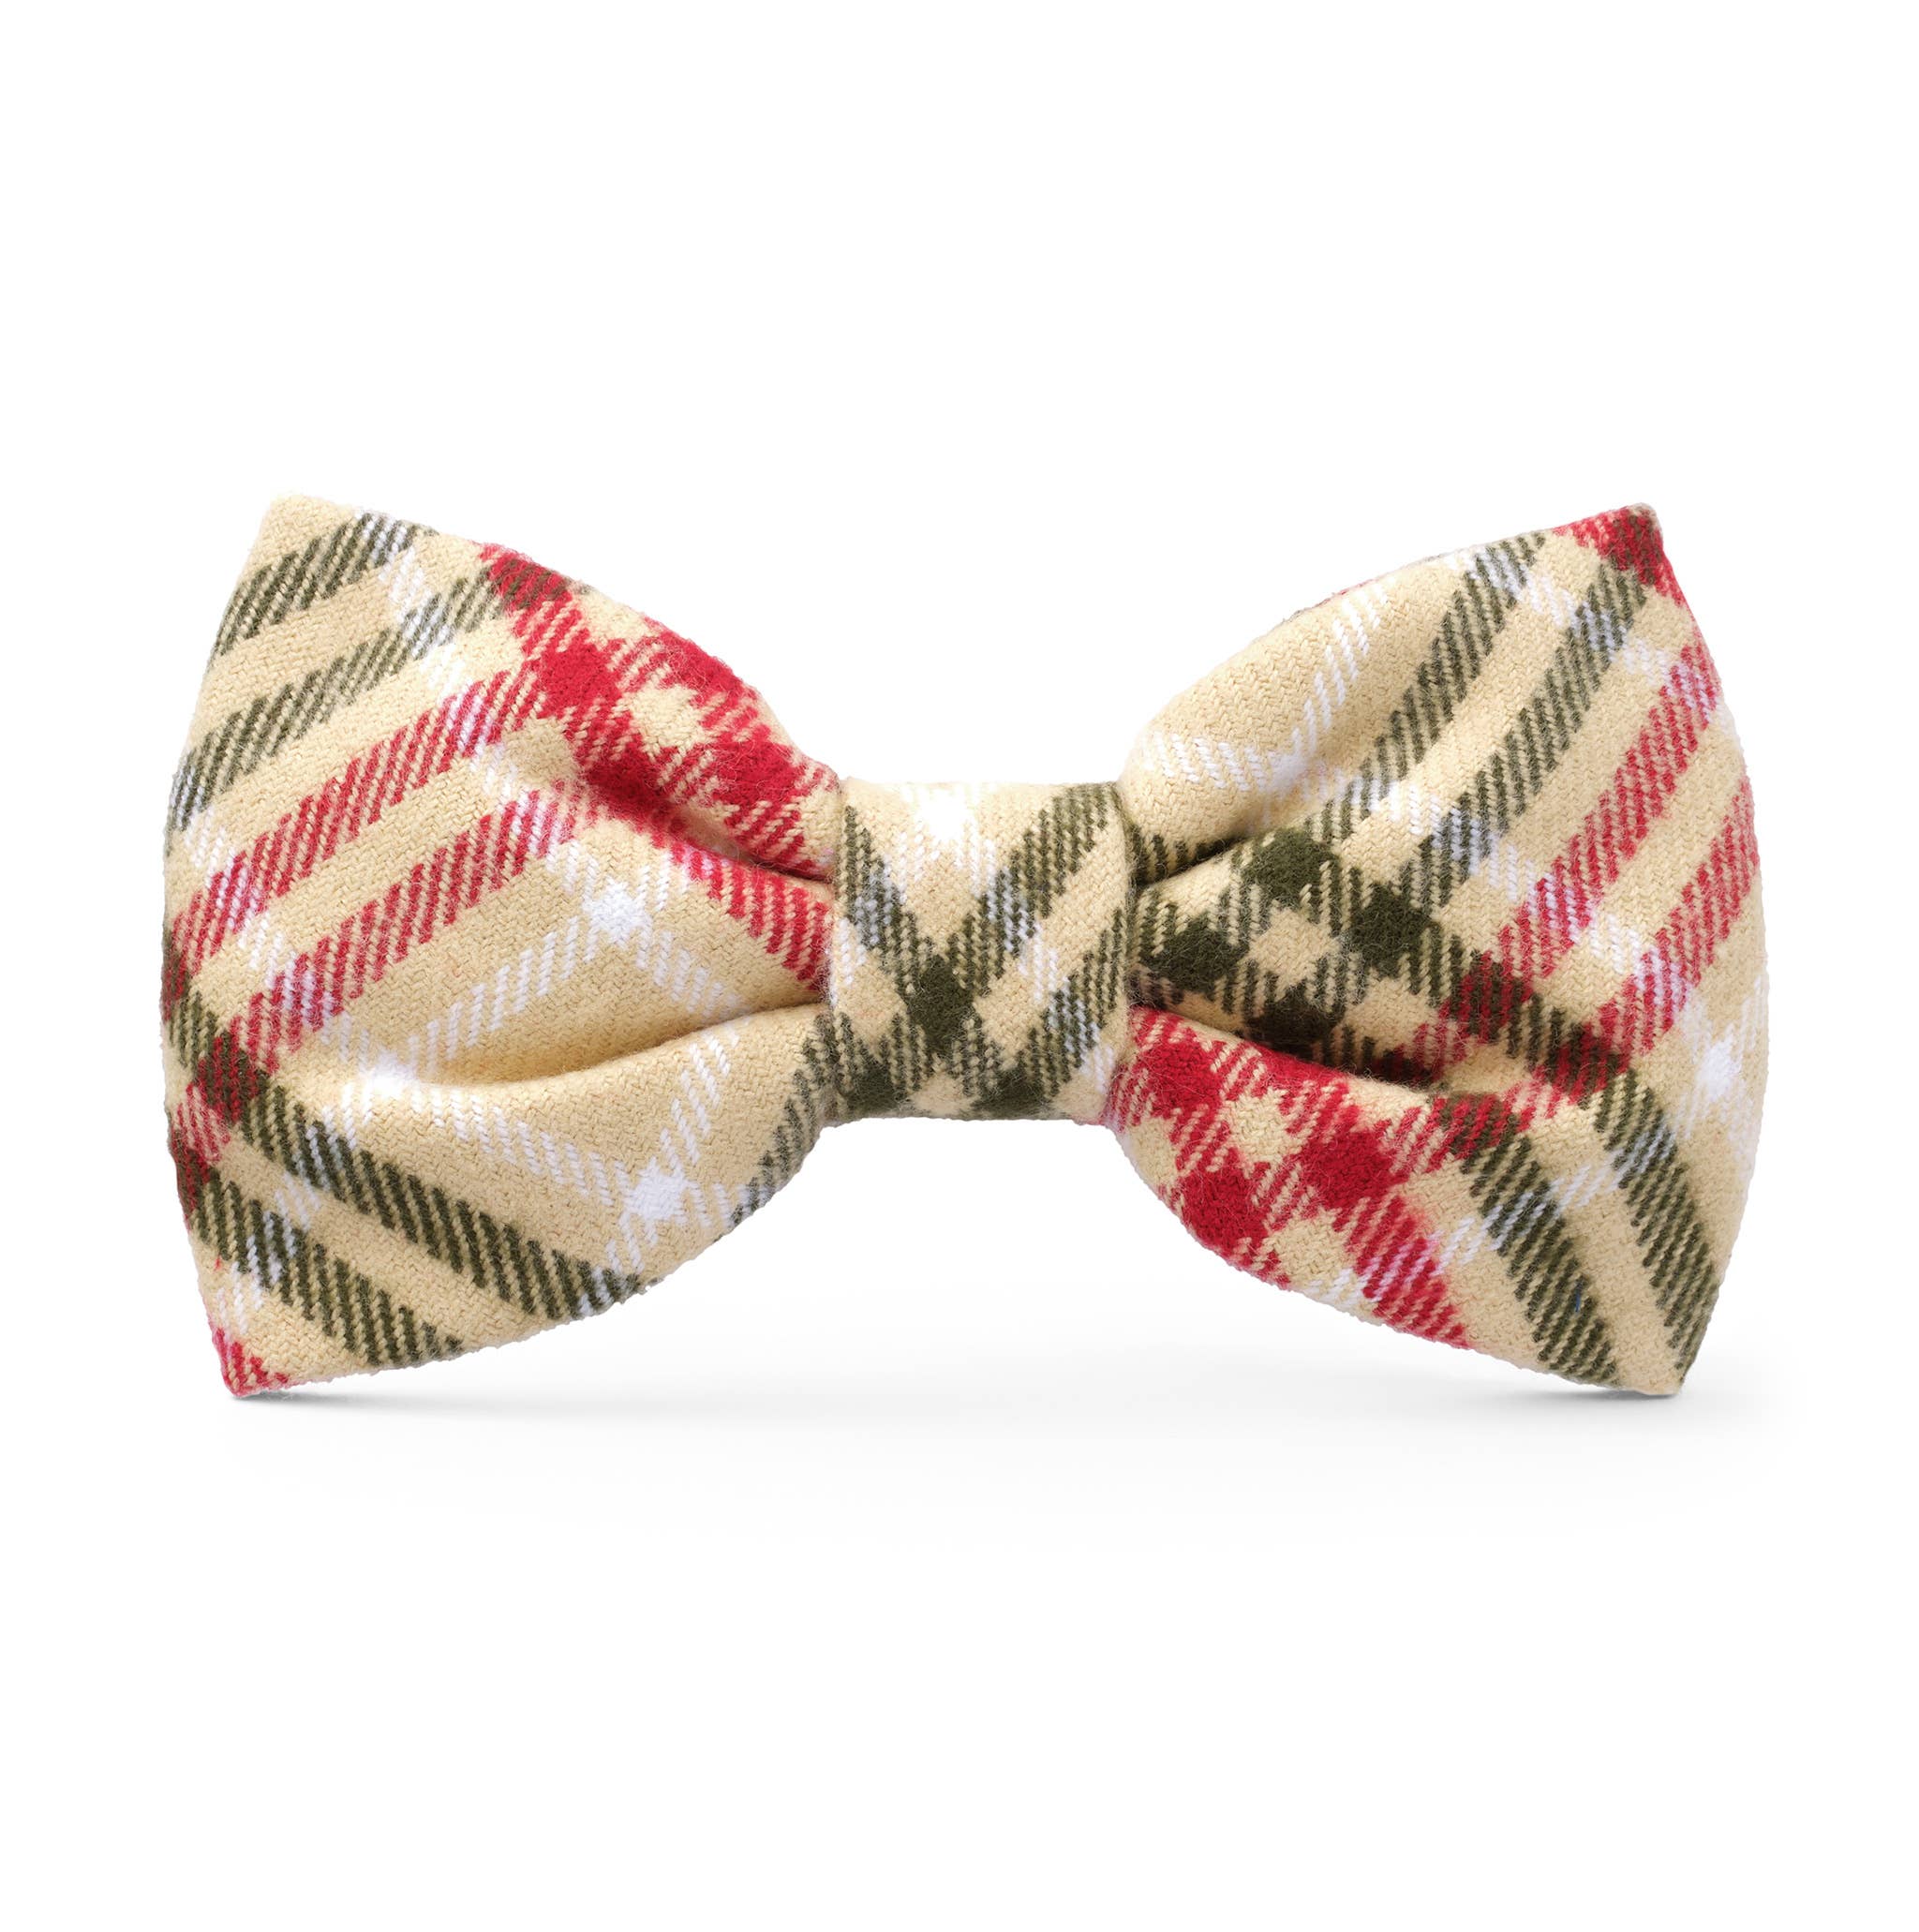 The Foggy Dog - Eggnog Plaid Flannel Holiday Bow Tie: Standard